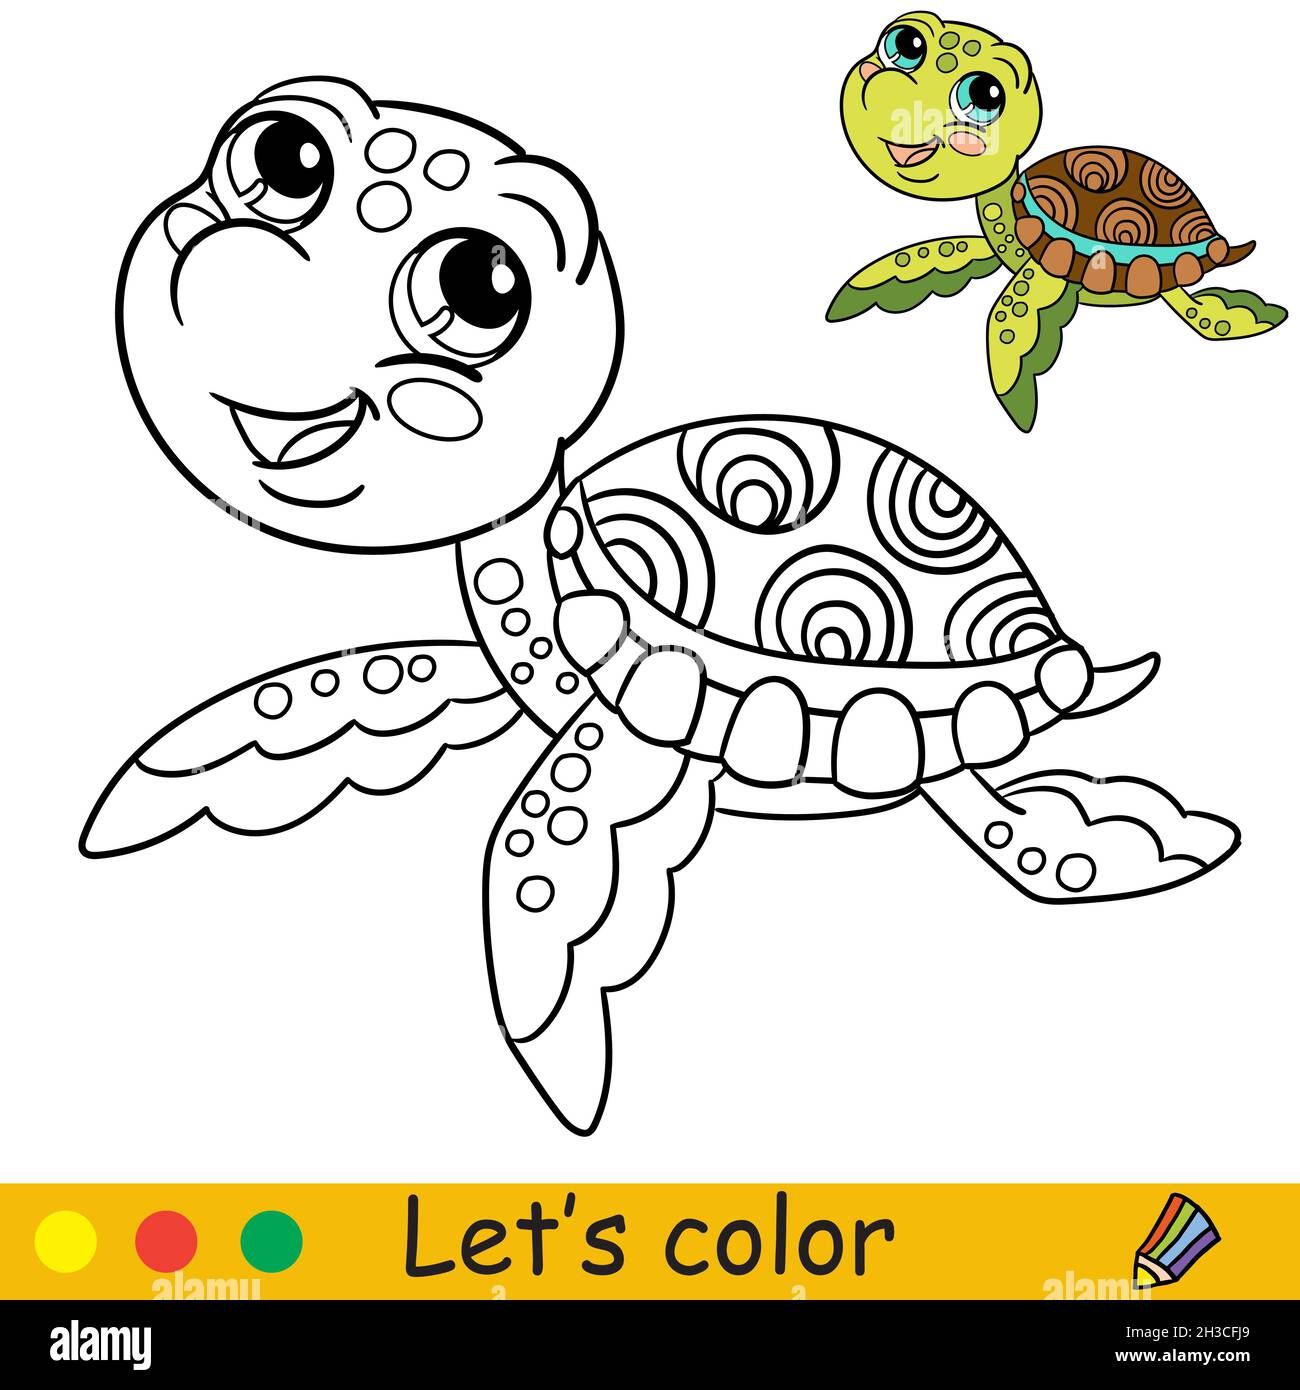 Jolie tortue d'eau amusante.Page de livre de coloriage avec modèle coloré  pour les enfants.Illustration de dessin animé vectoriel.Dessin d'esquisse à  main levée.Pour colorier, imprimer Image Vectorielle Stock - Alamy